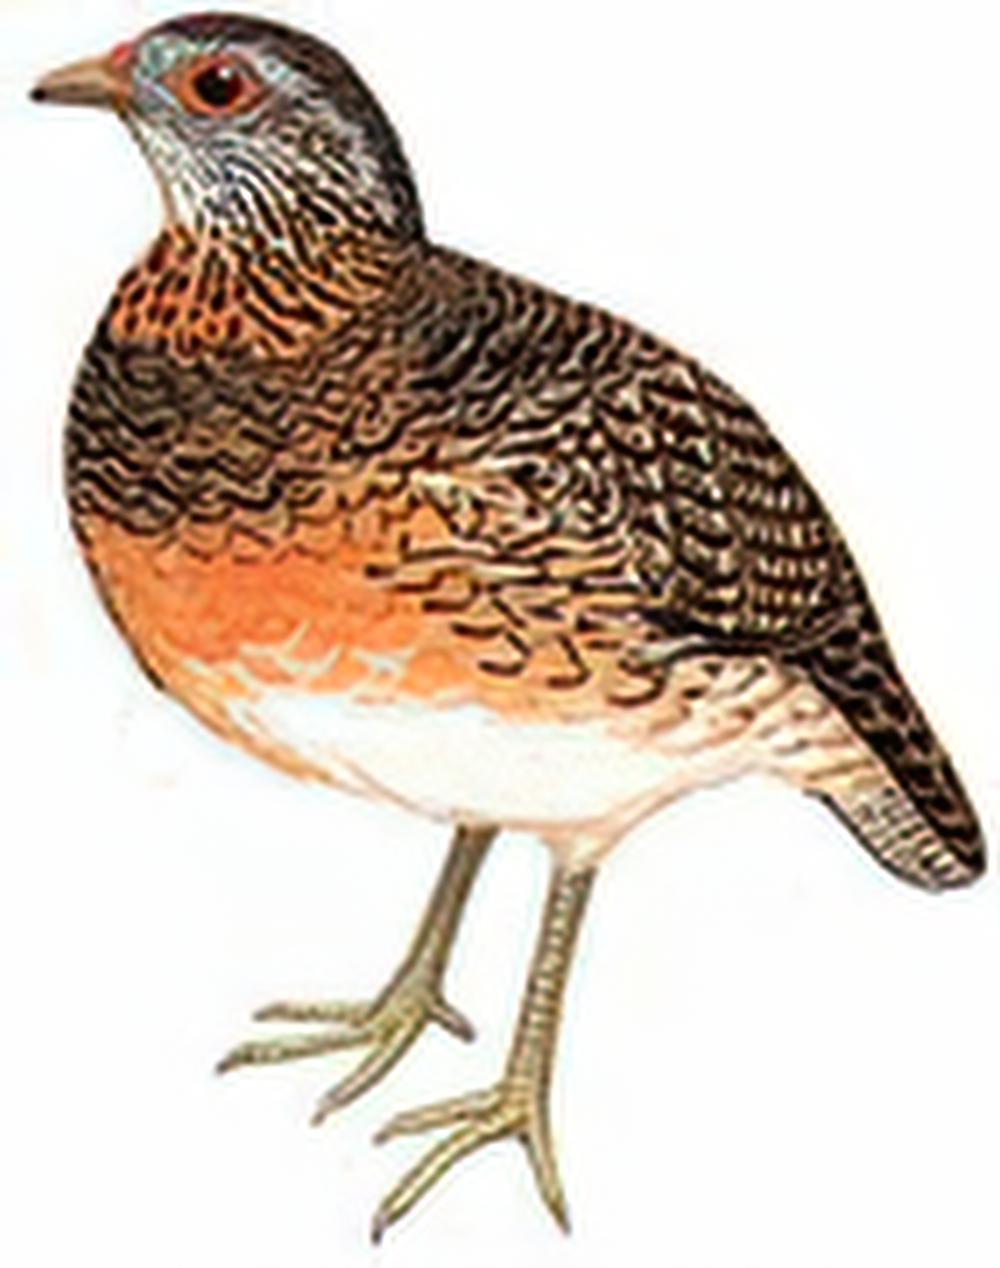 绿脚山鹧鸪 / Scaly-breasted Partridge